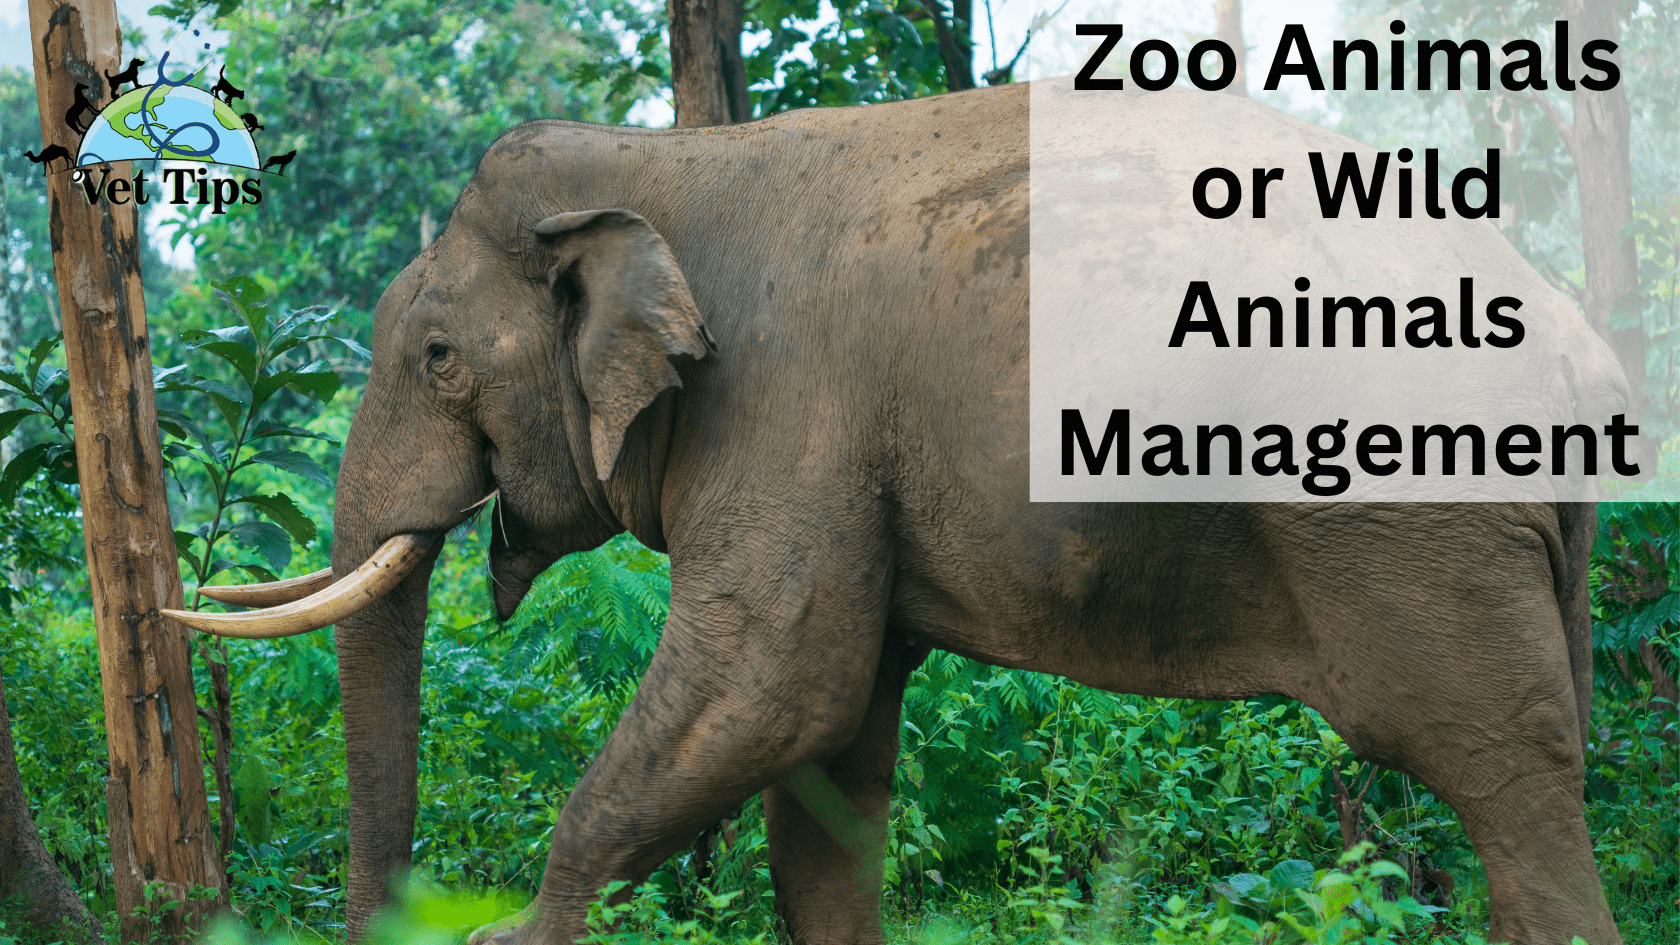 Zoo Animals or Wild Animals Management